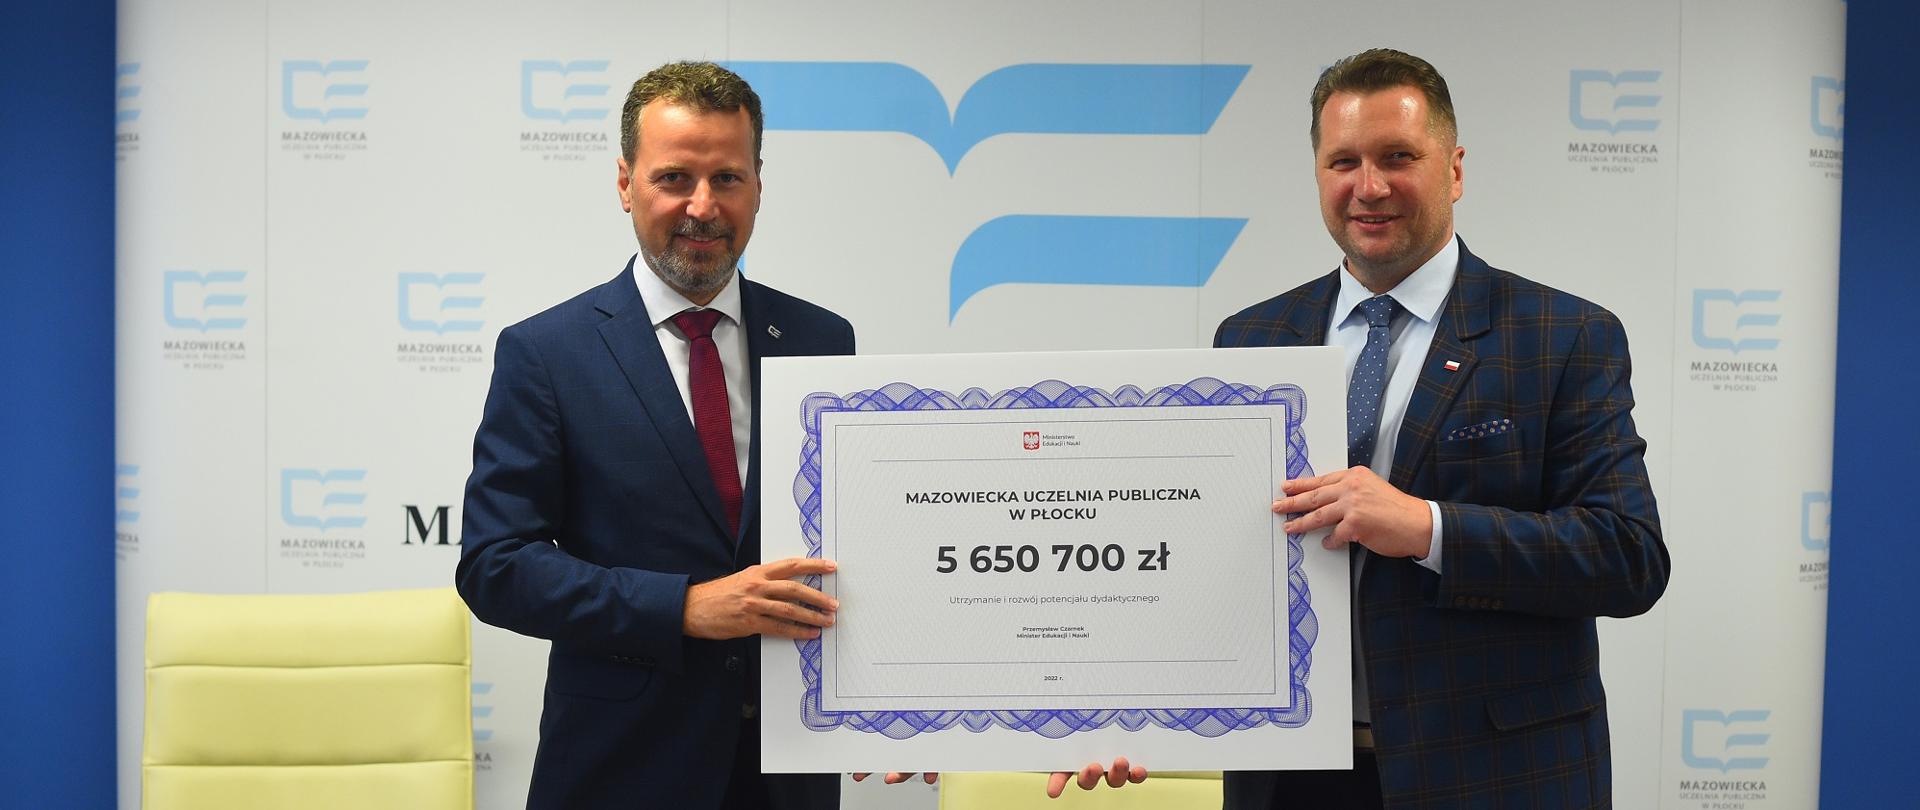 Minister stoi za stołem i prezentuje symboliczny czek na kwotę 5 650 700 zł.